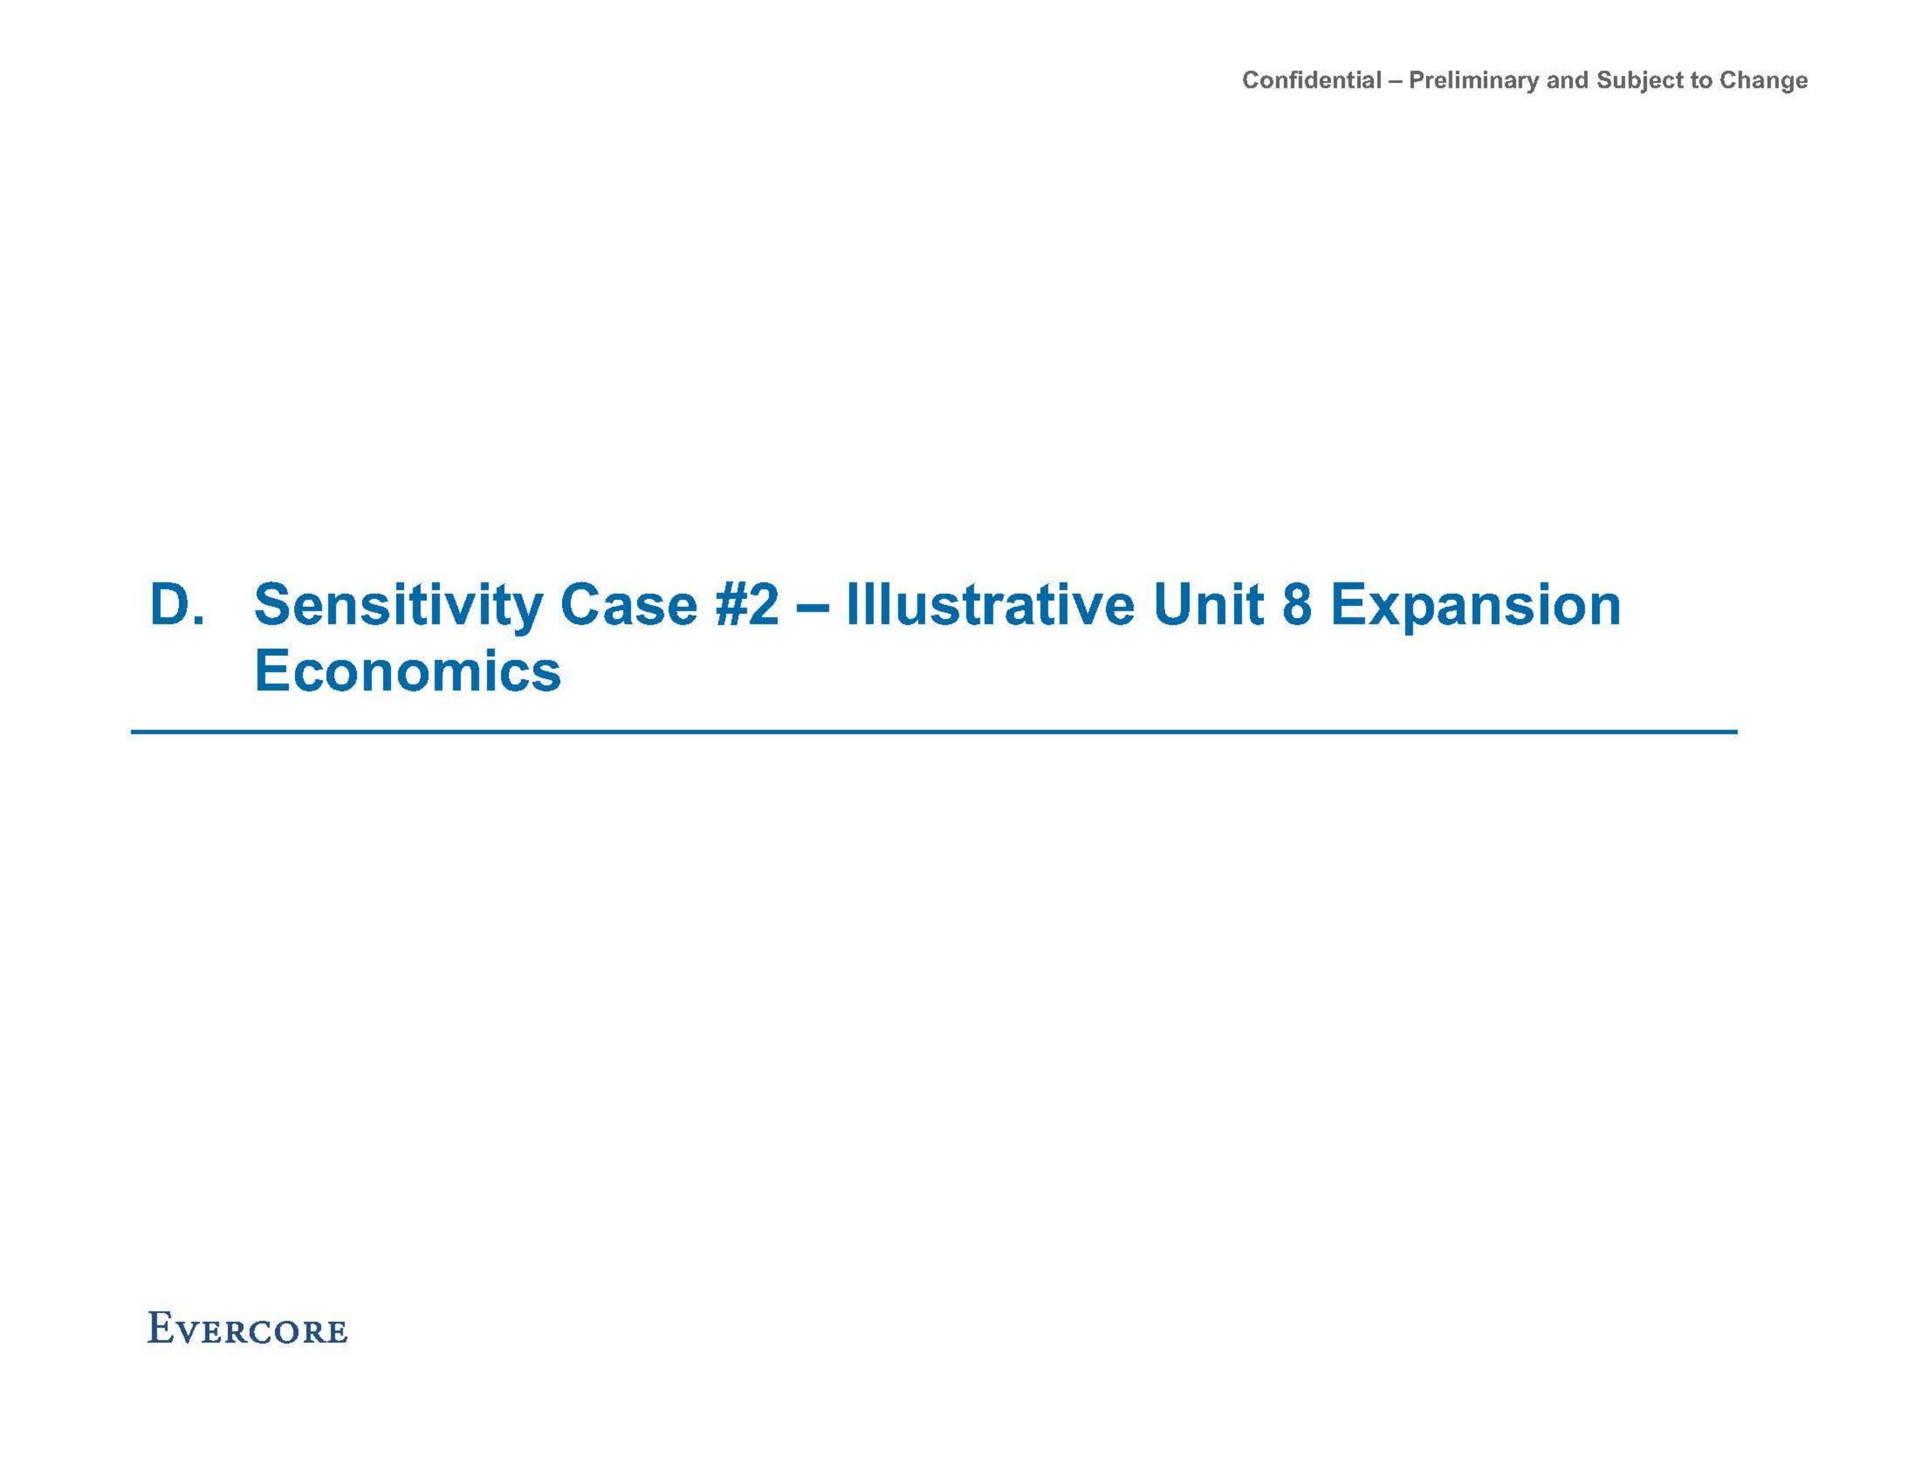 sensitivity case illustrative unit expansion economics | Evercore